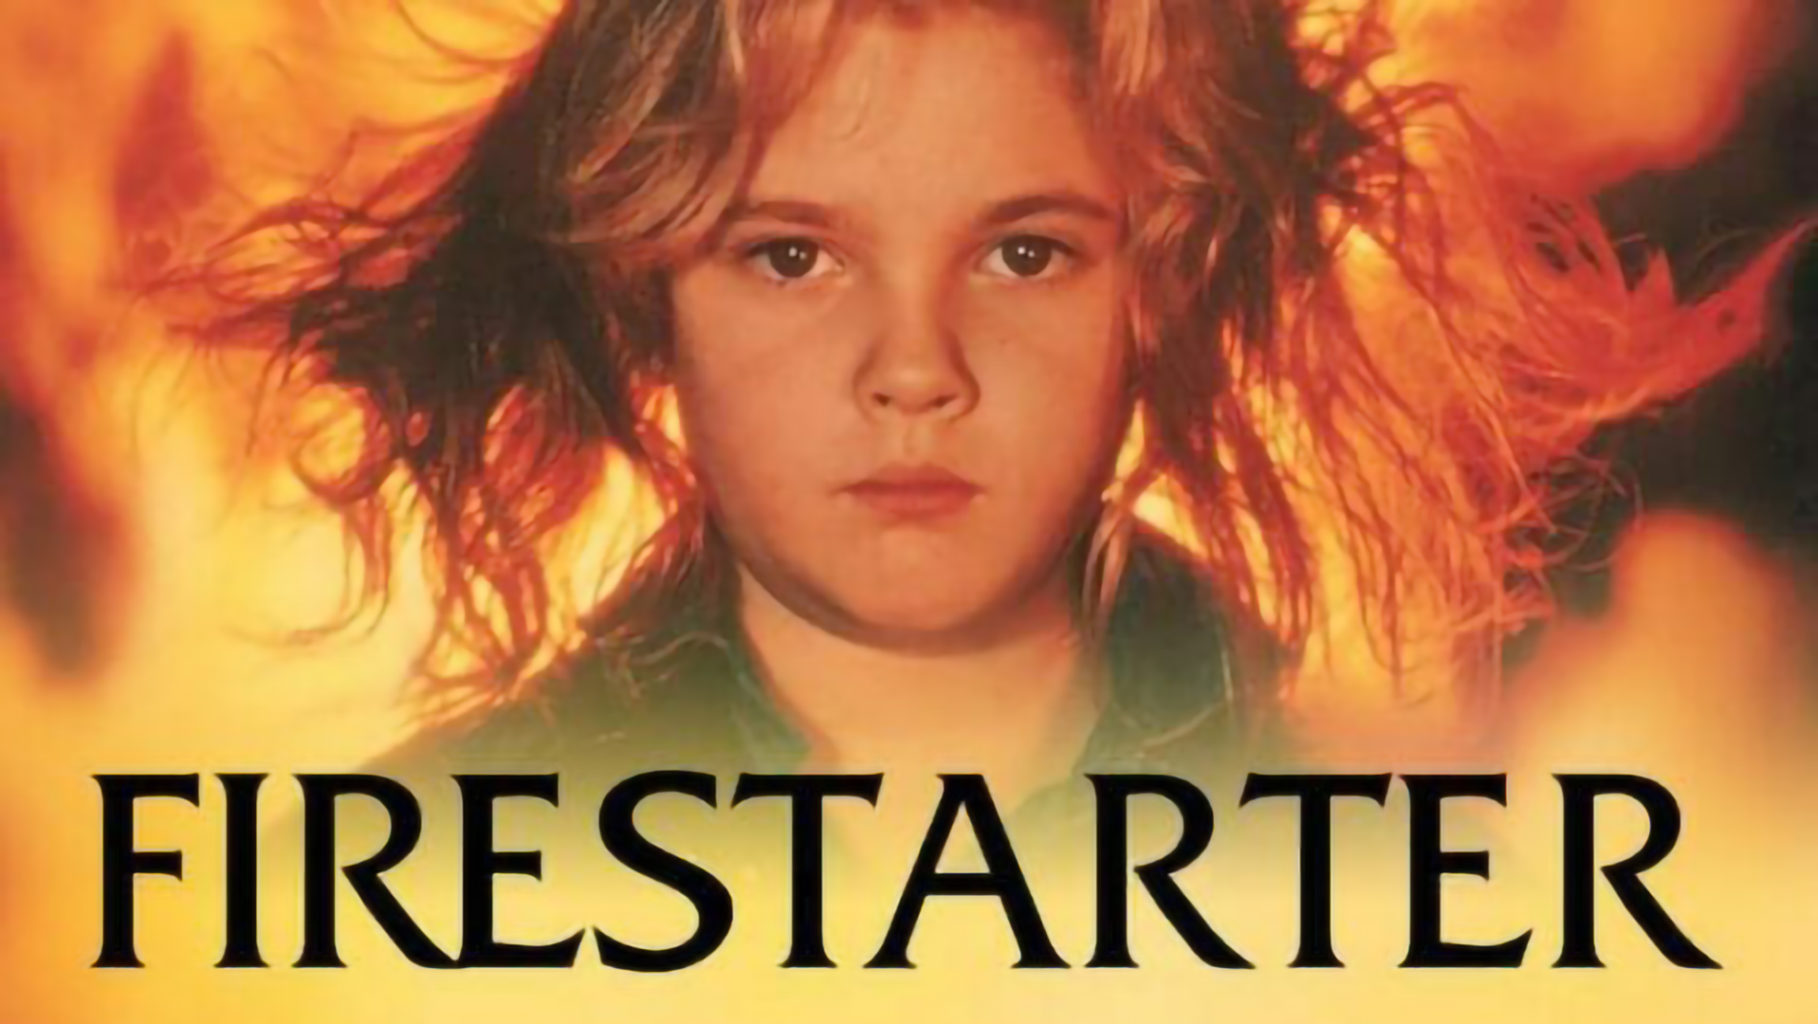 Firestarter (1984, R)